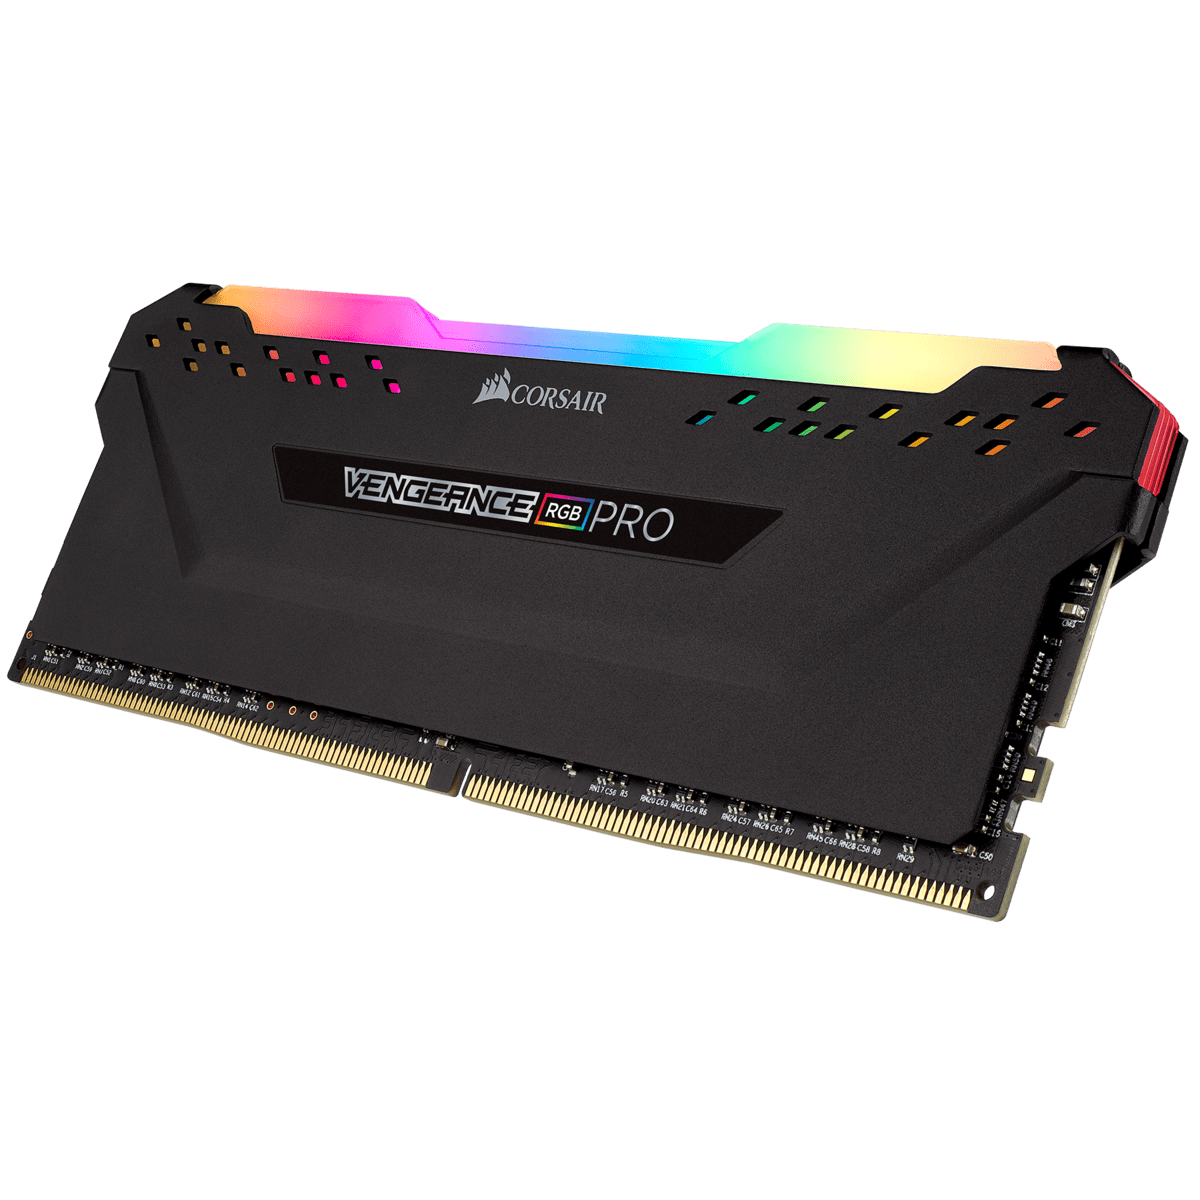 Corsair releases 16GB 4,866MHz Vengeance LPX DDR4 memory kit - RAM